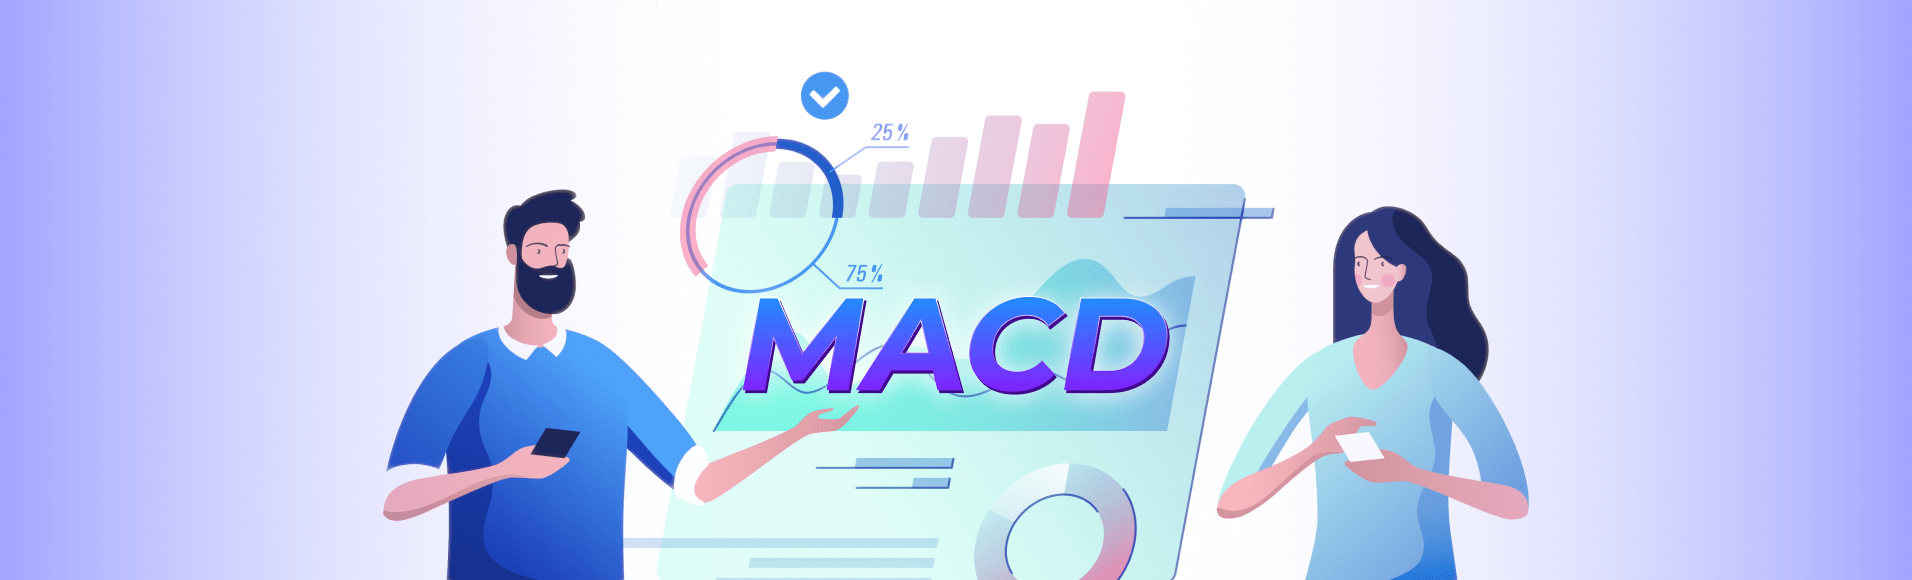 MACD mengagumkan: keuntungan opsi biner sederhana